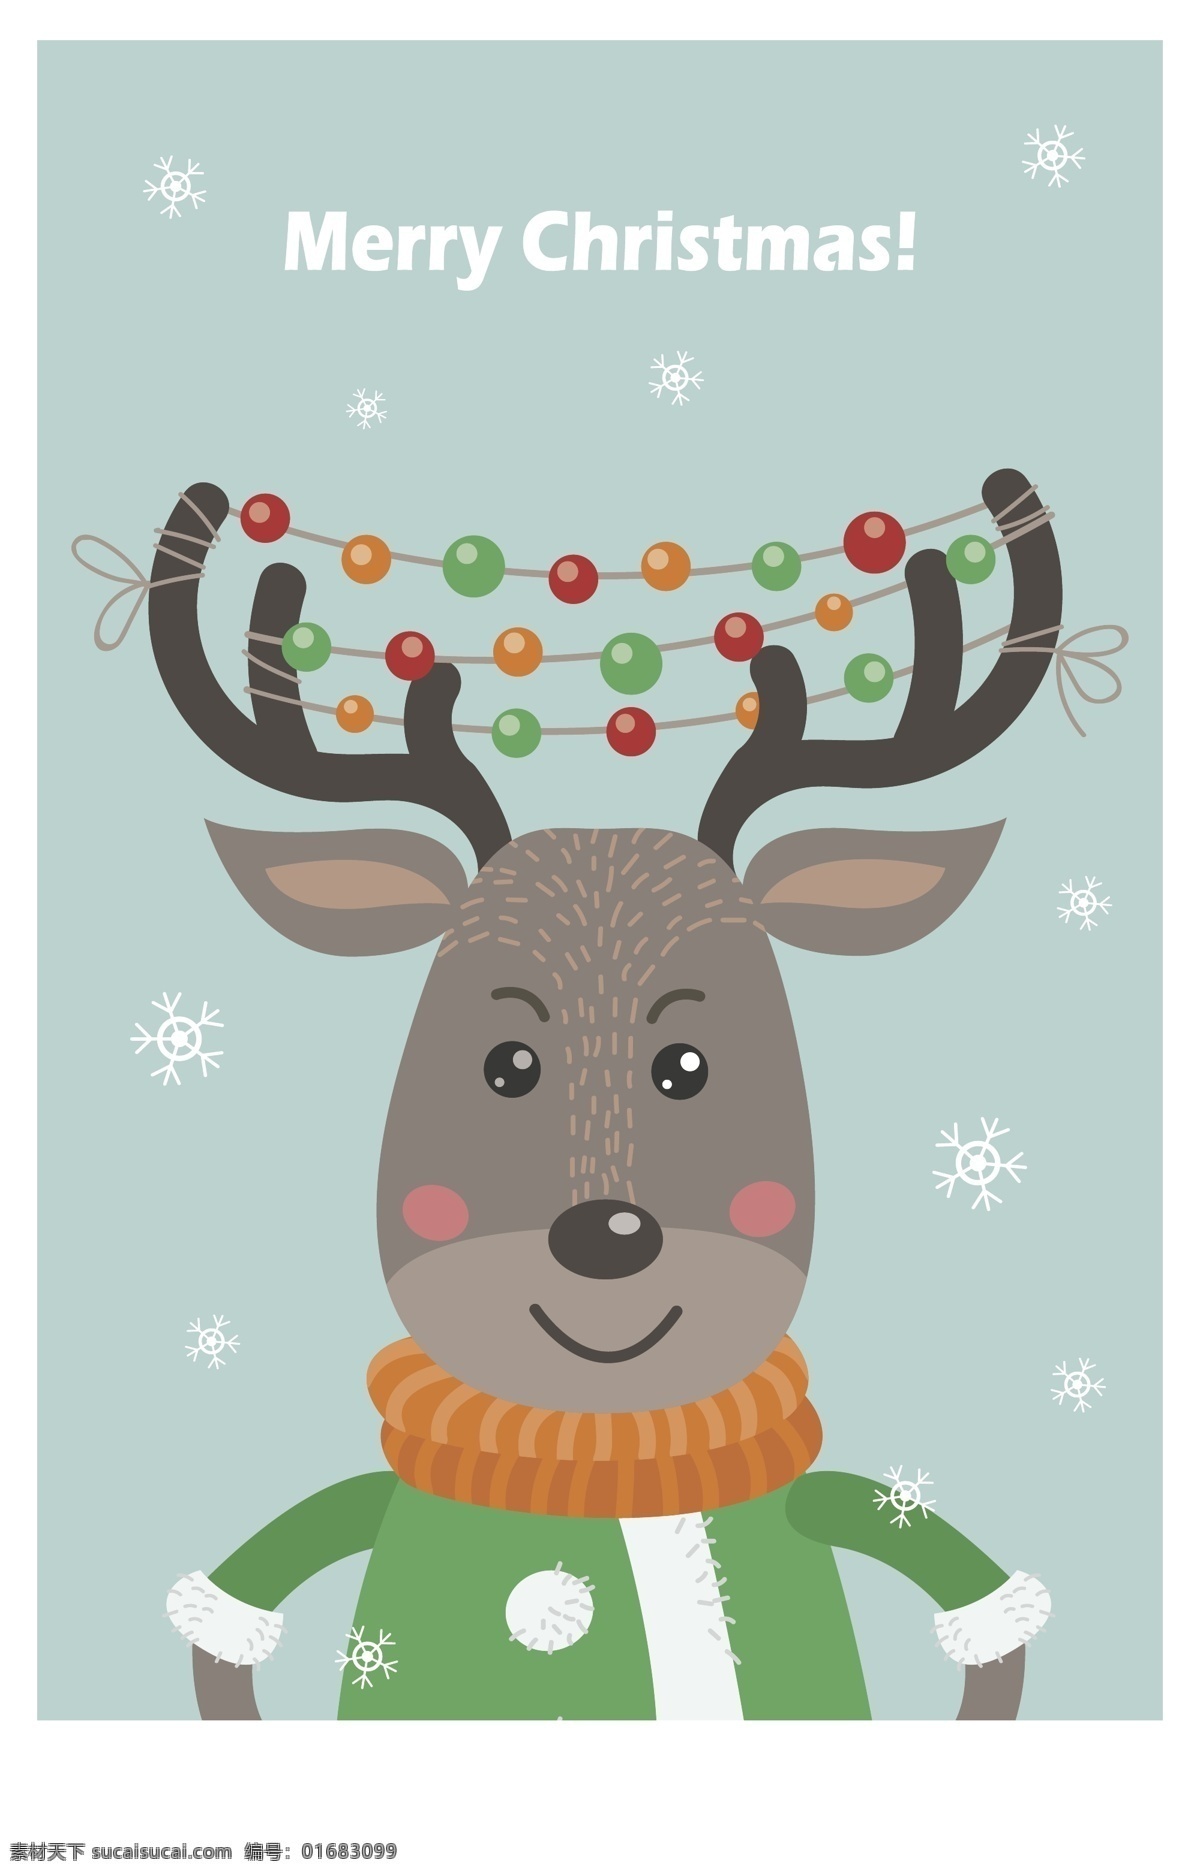 麋鹿 羊驼 礼物 礼盒 冬天 冬天动物 圣诞 可爱动物 卡通小动物 圣诞快乐 圣诞鹿 雪花 圣诞海报 矢量素材